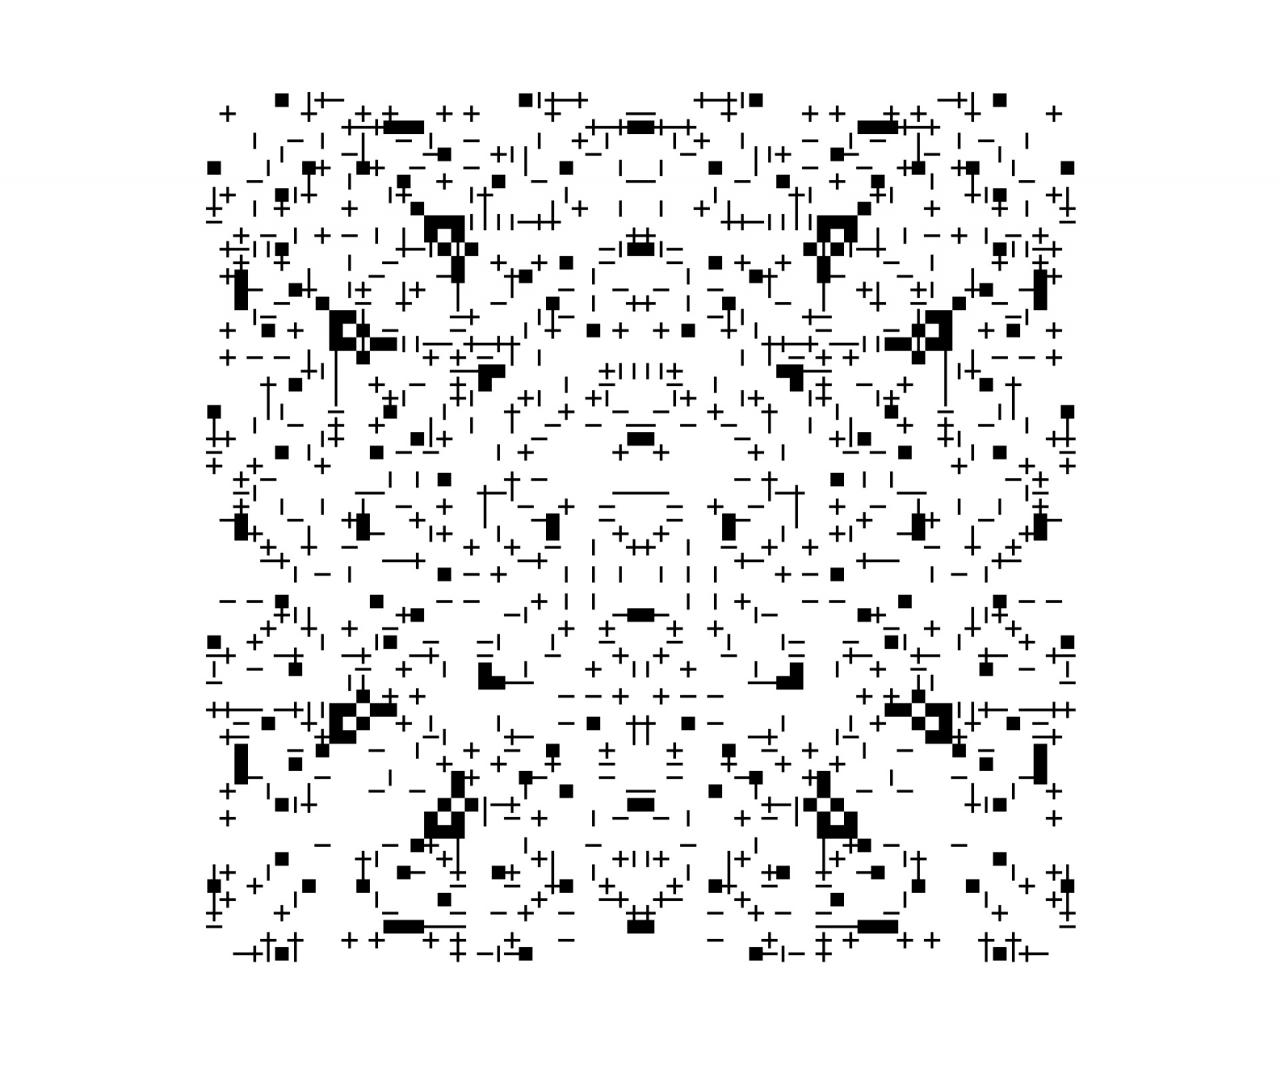 Schwarze Pixel vor weißem Hintergrund bilden ein Muster